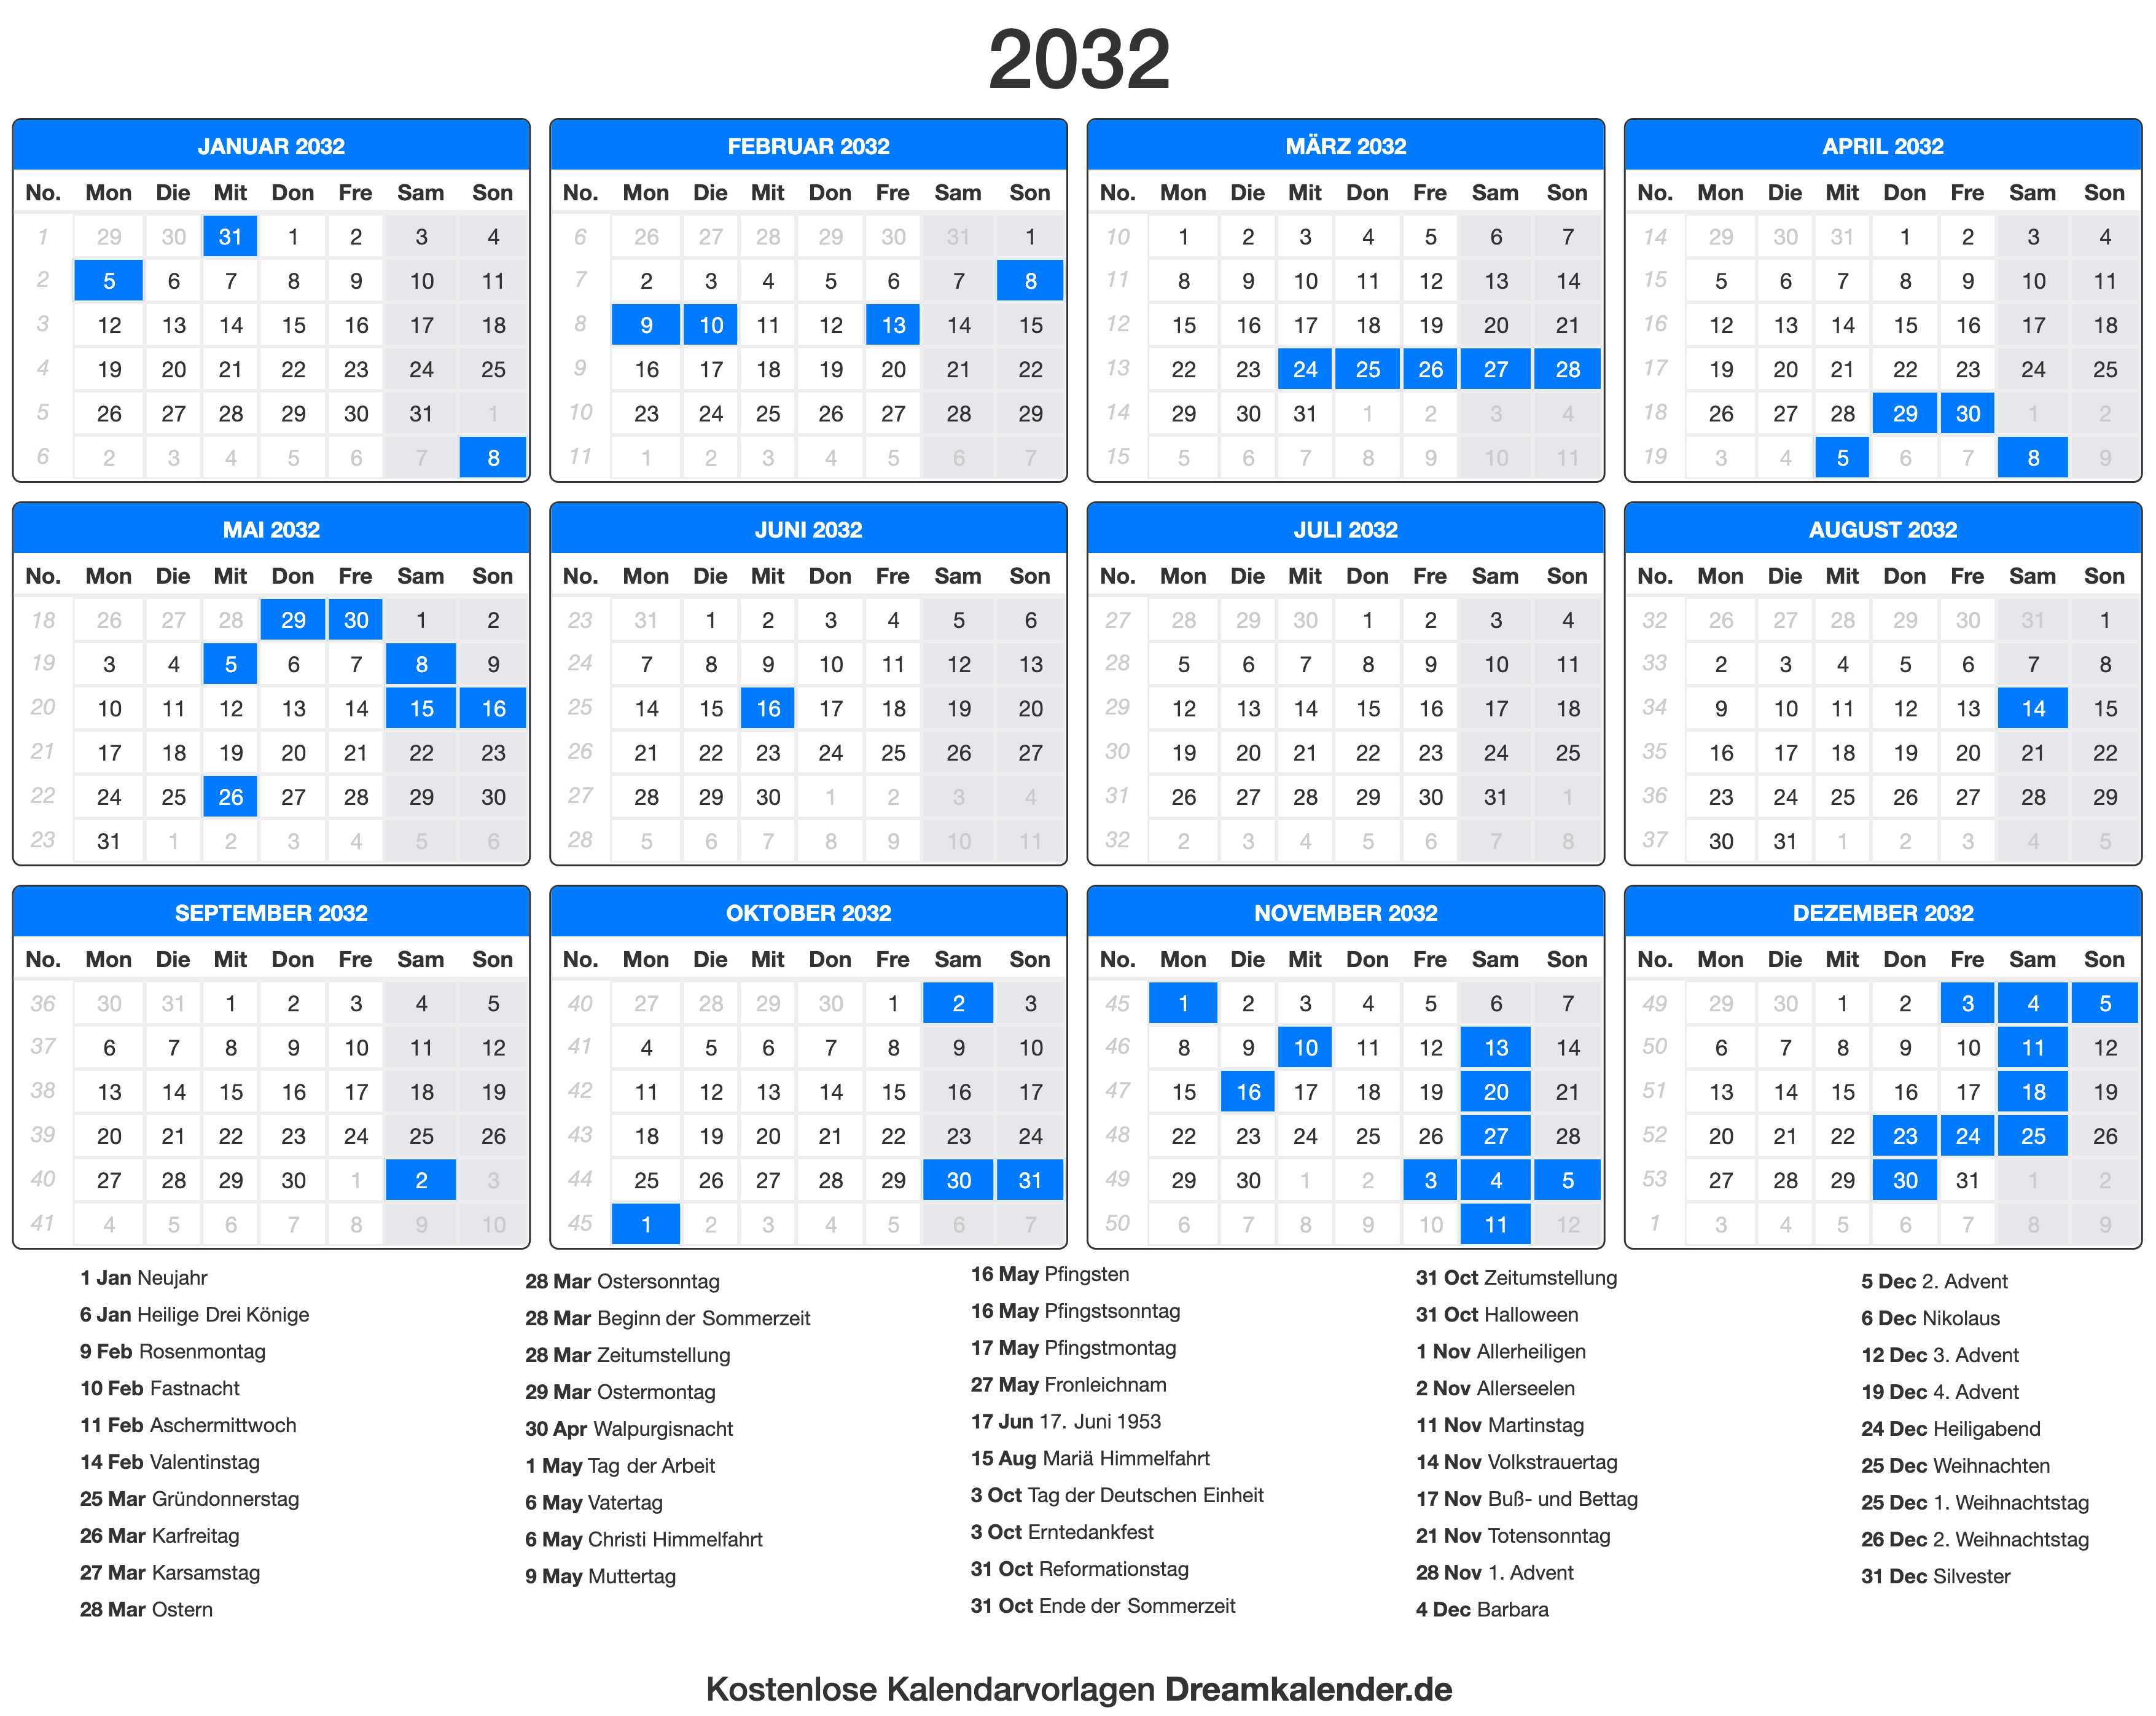 Calendario 2032 - Bank2home.com